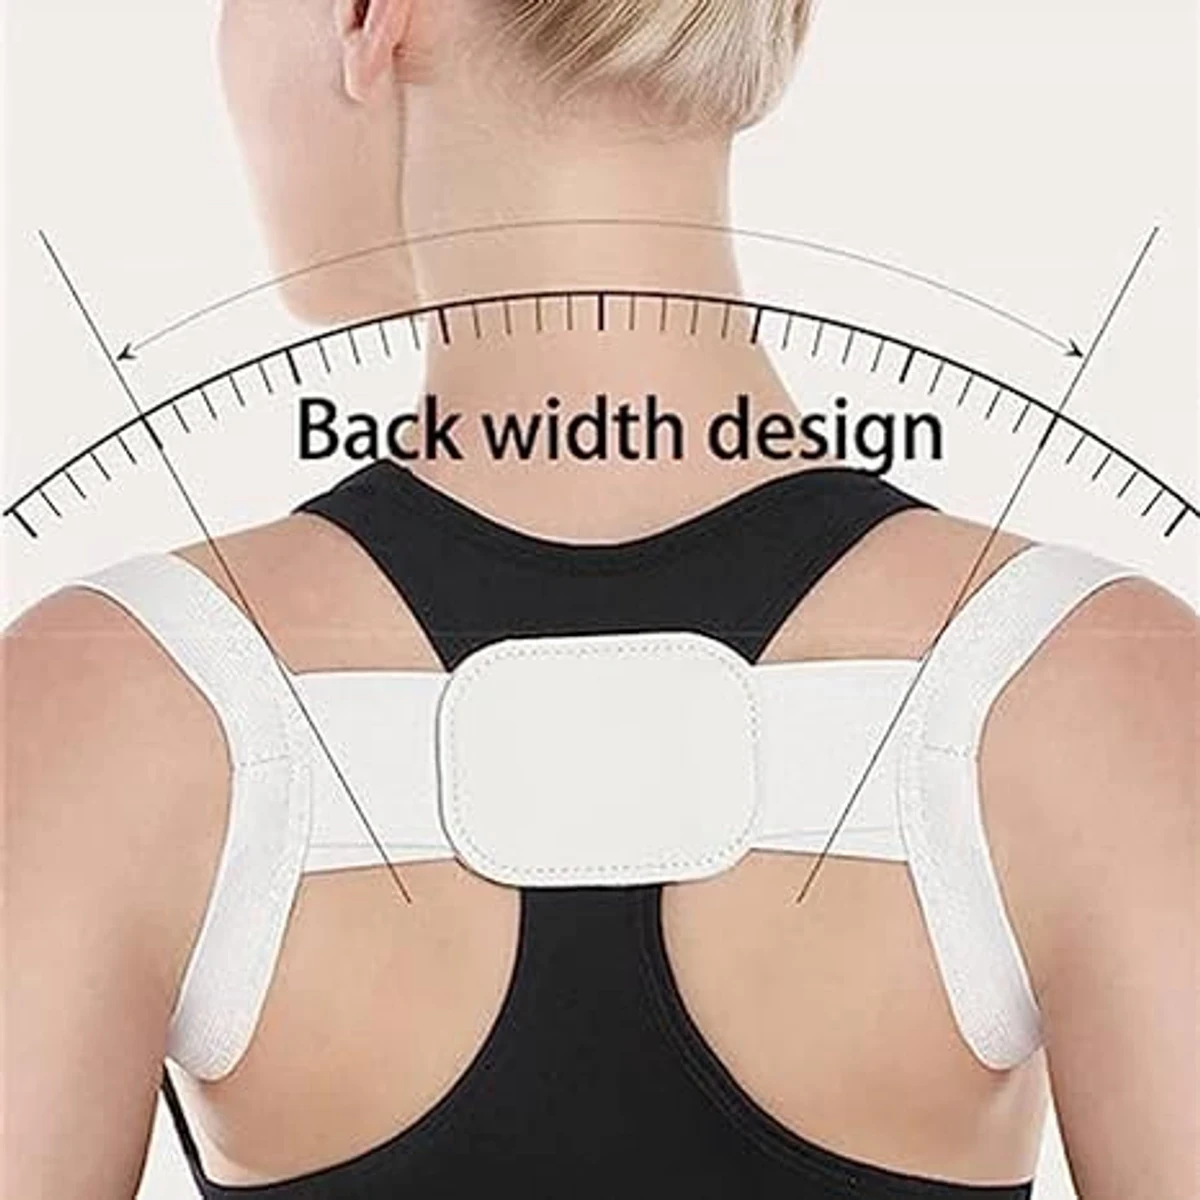 Shoulder Back Support Belt